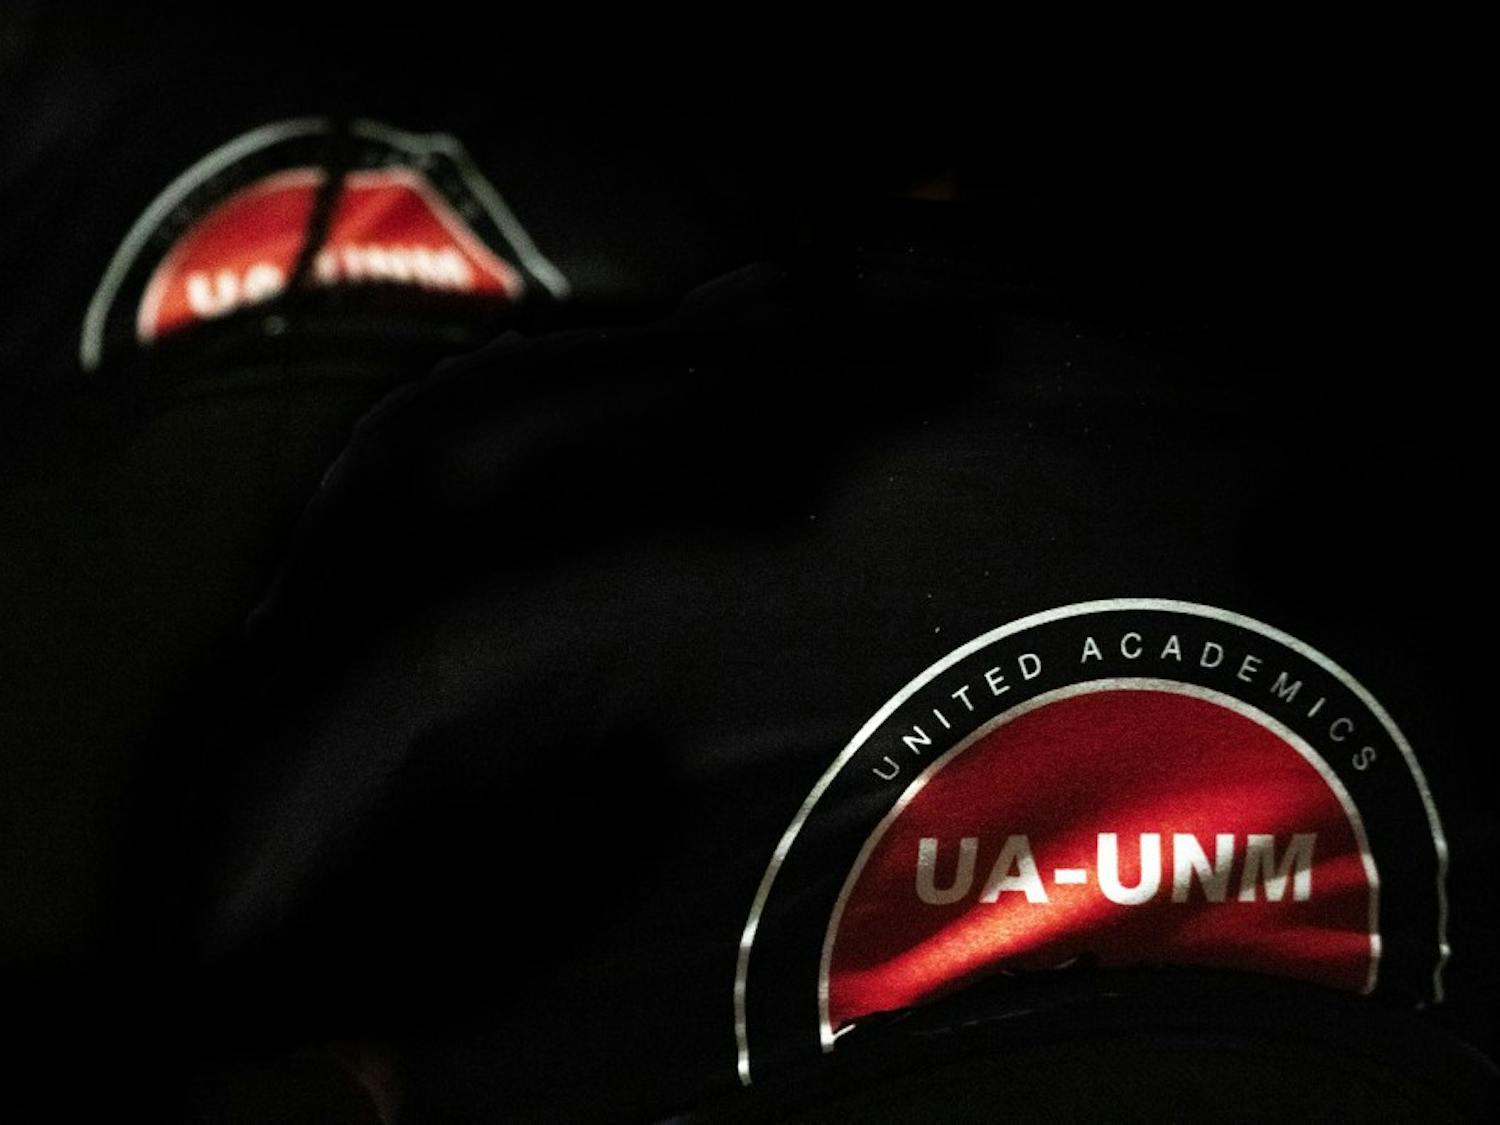 UA-UNM